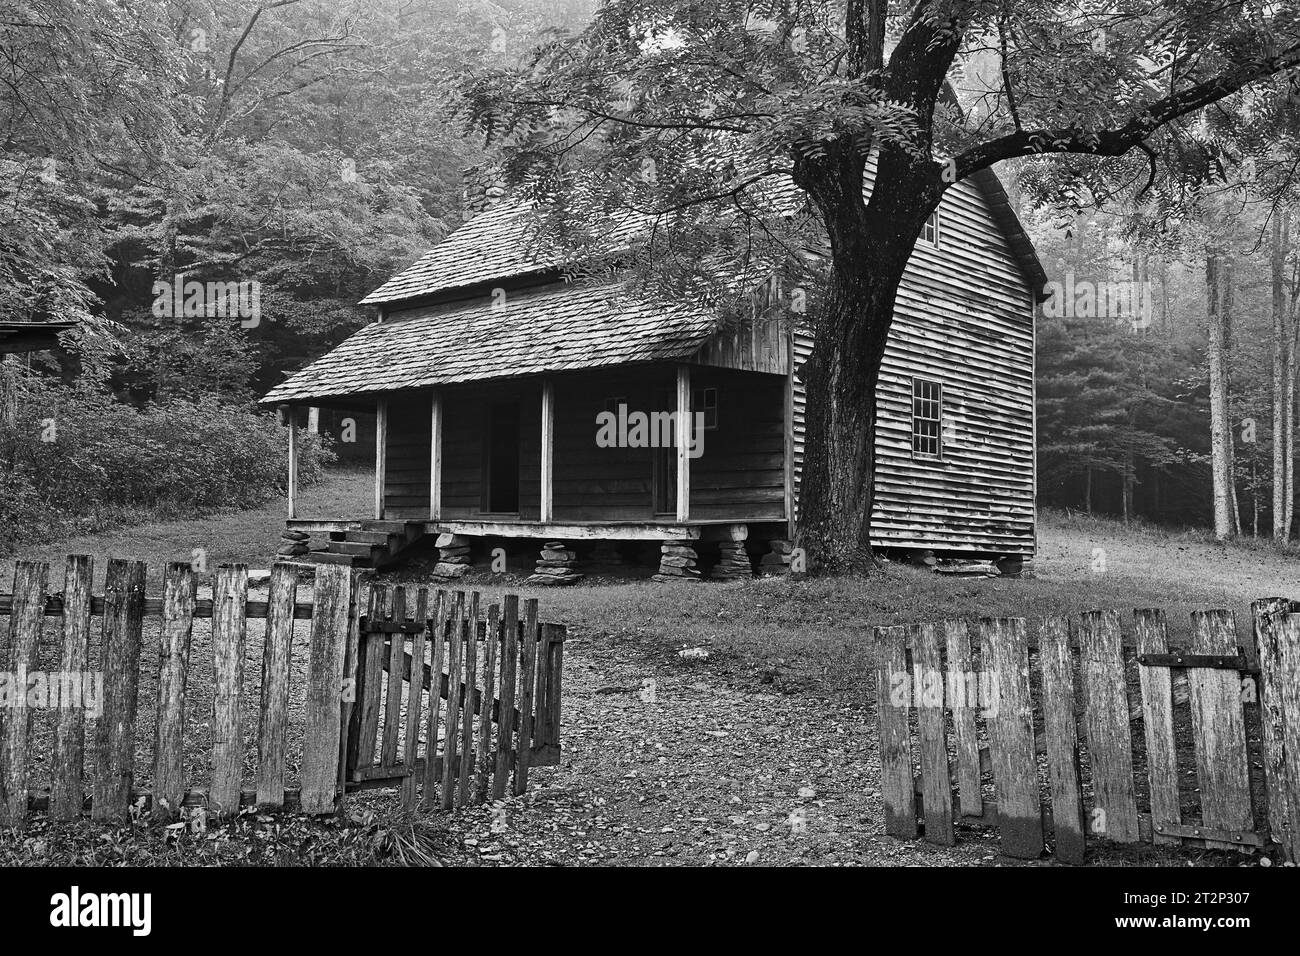 Photographie d'art noir et blanc de Tifton place, Cades Cove, parc national des Great Smoky Mountains, Tennessee Banque D'Images